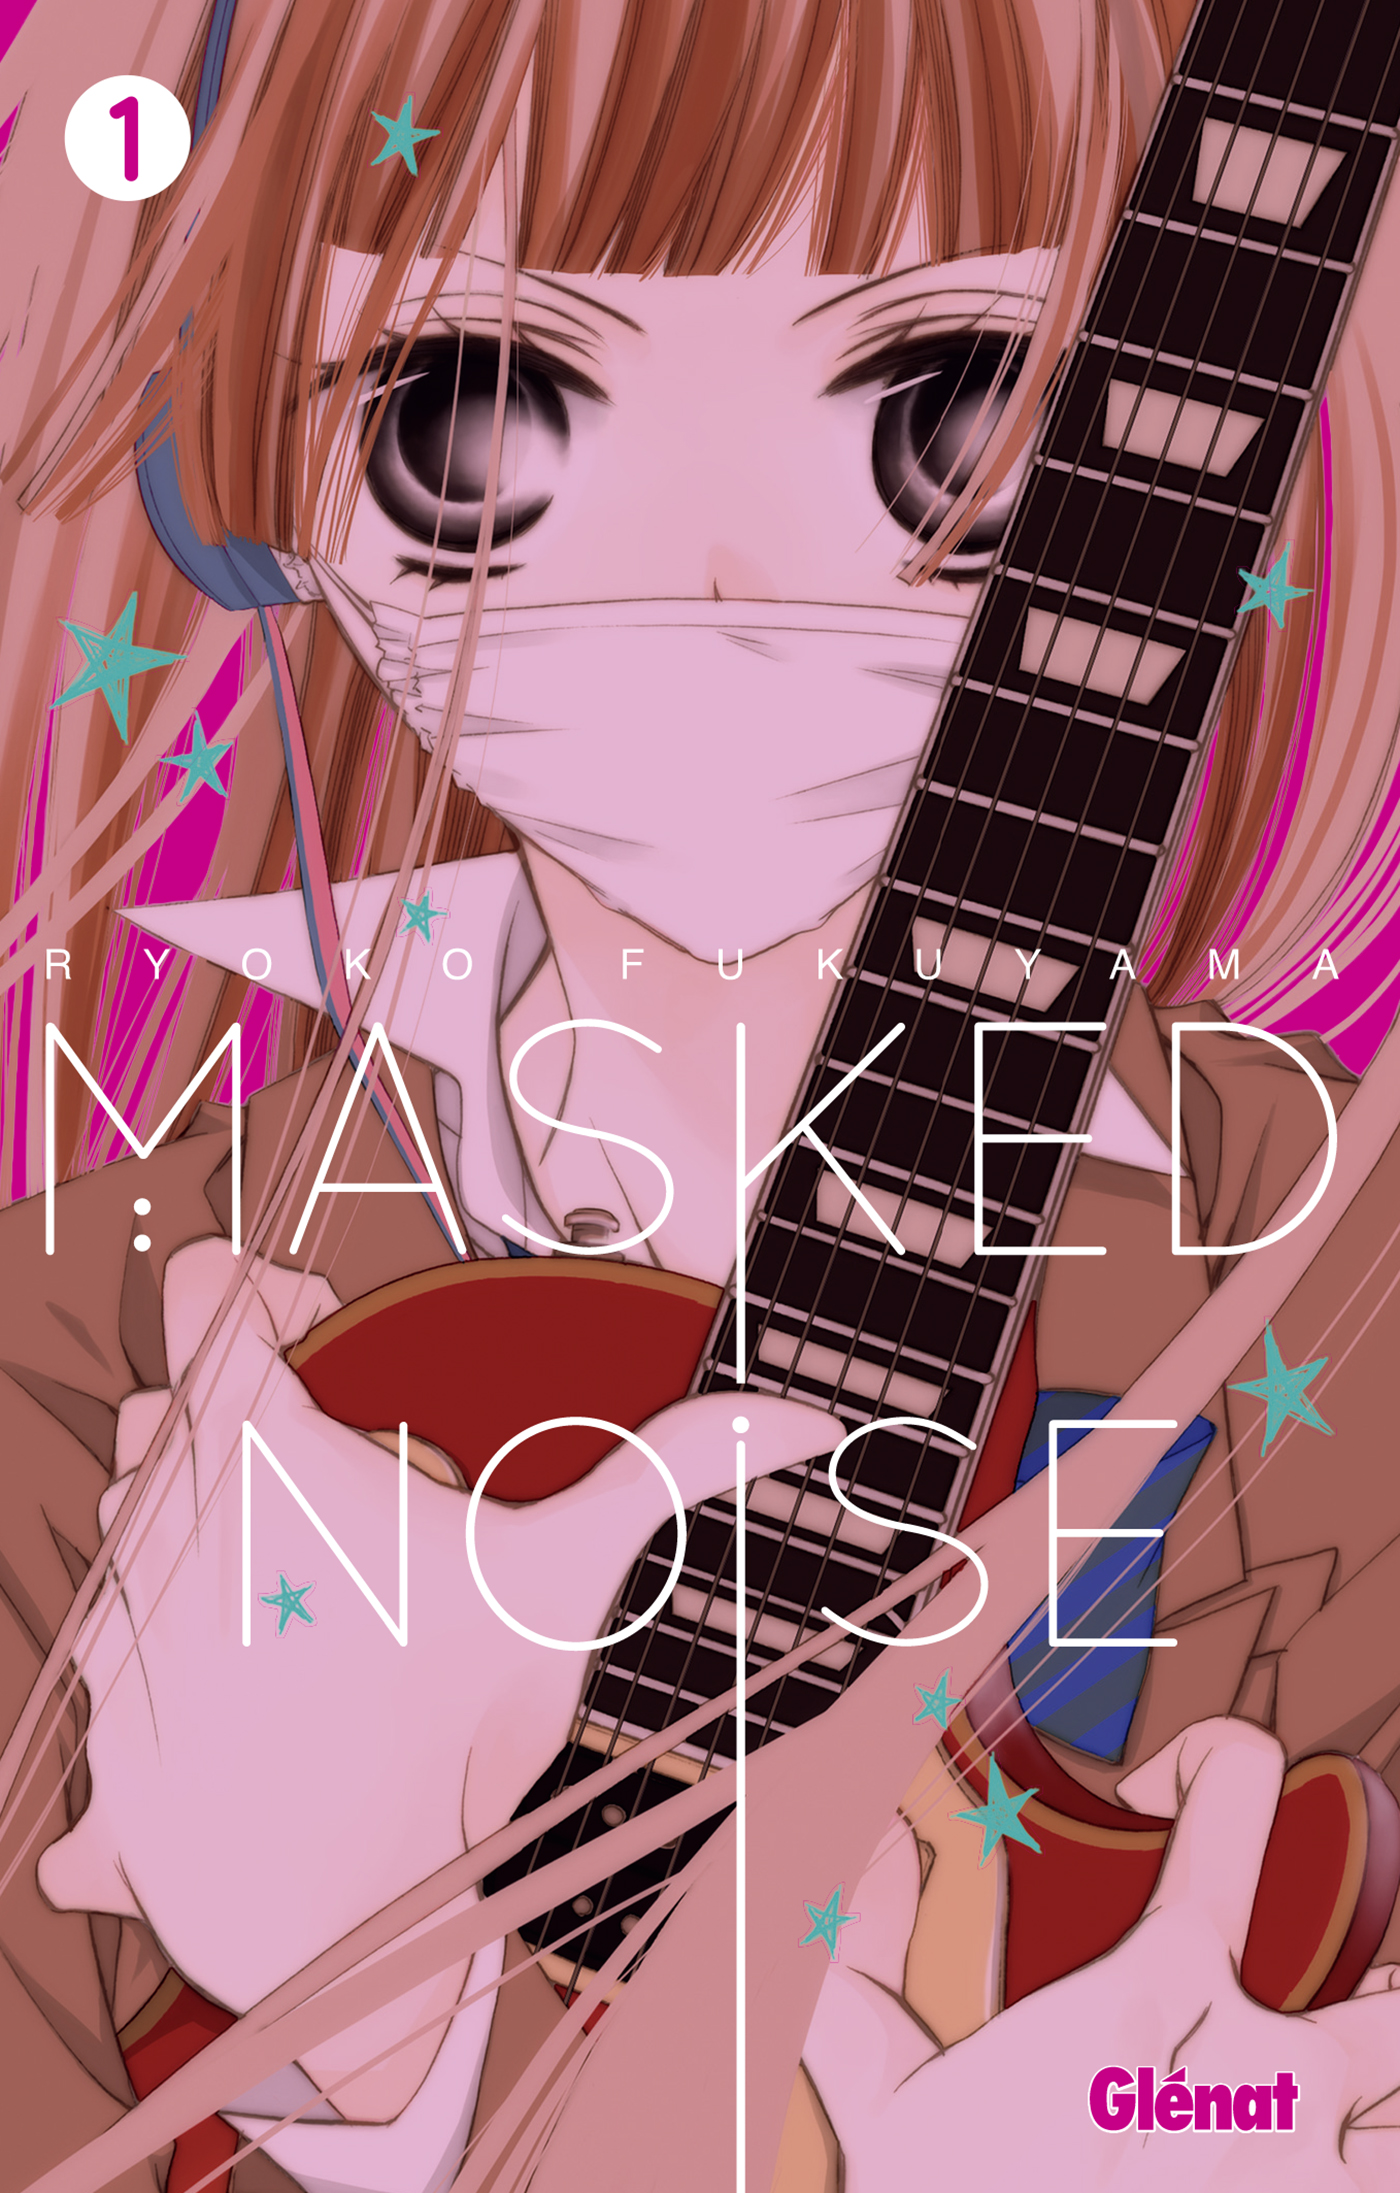 Masked Noise